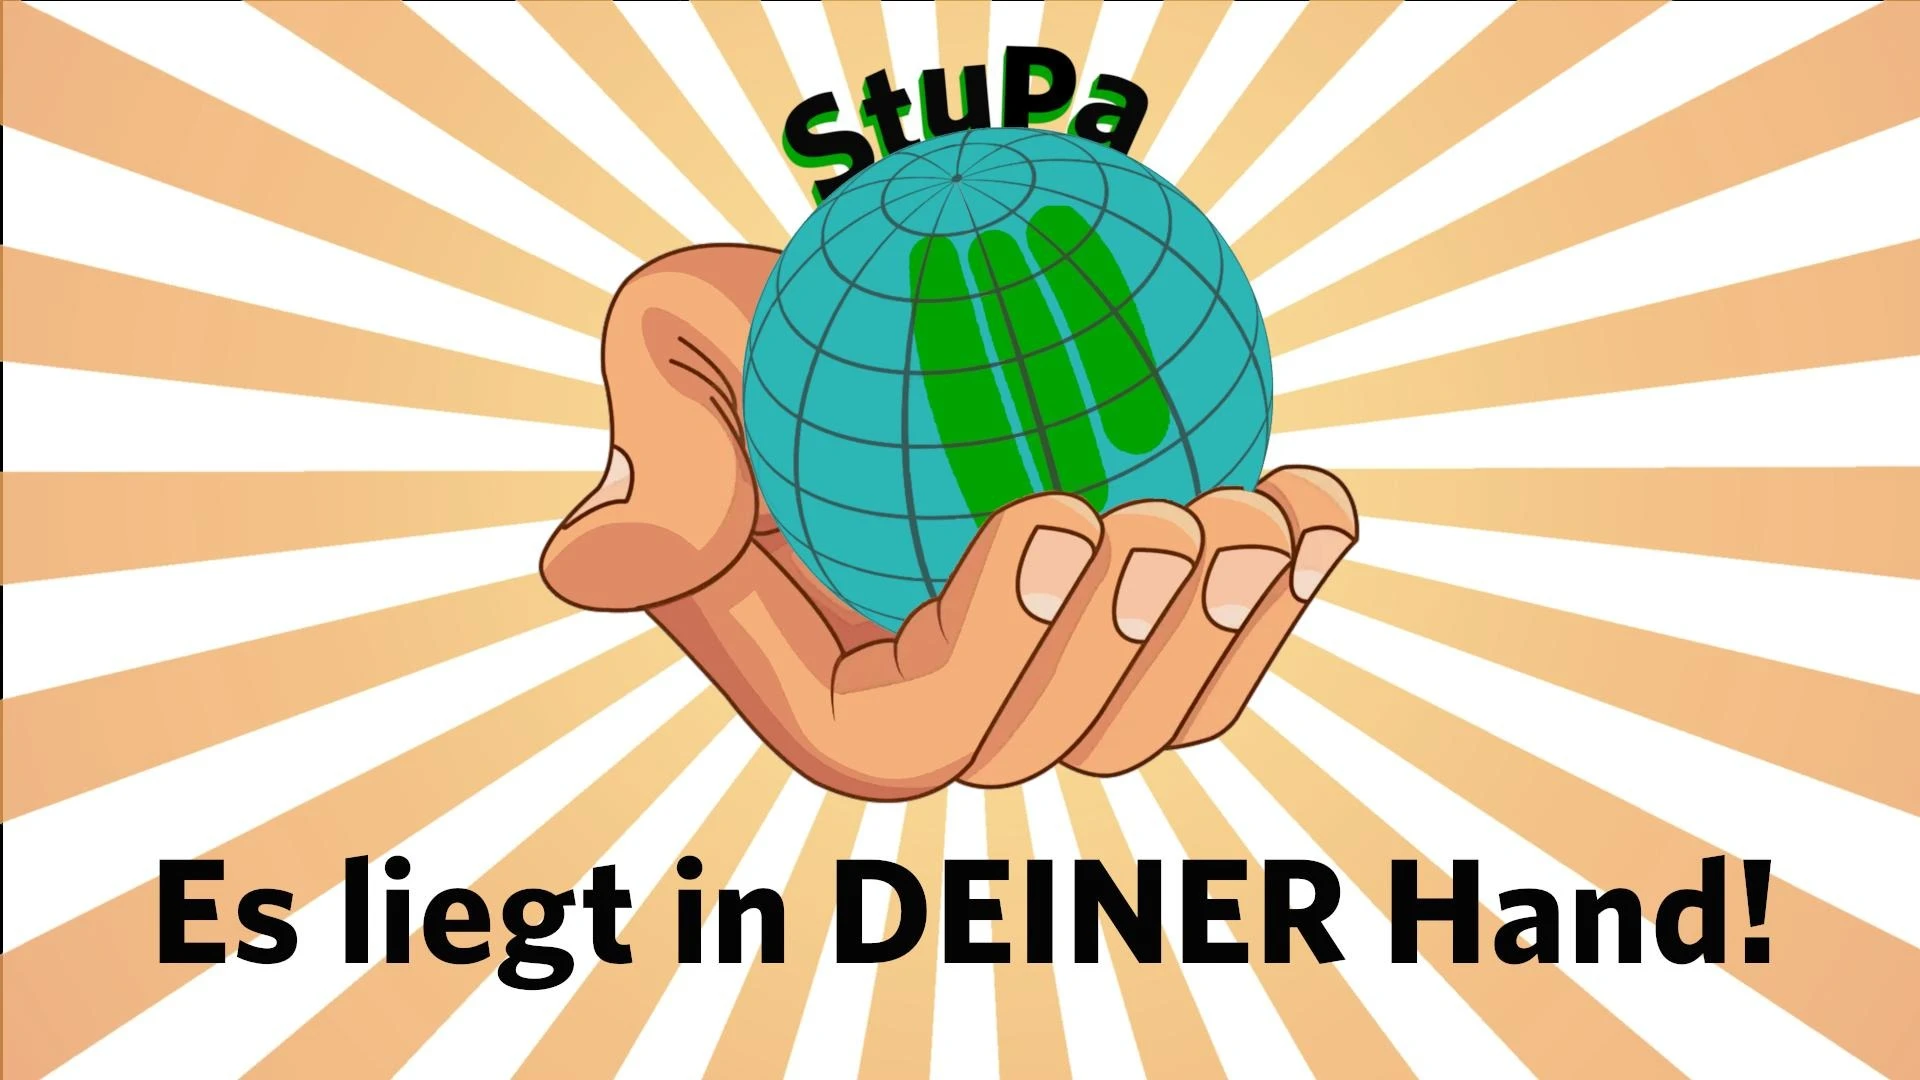 StuPa - Es liegt in deiner Hand